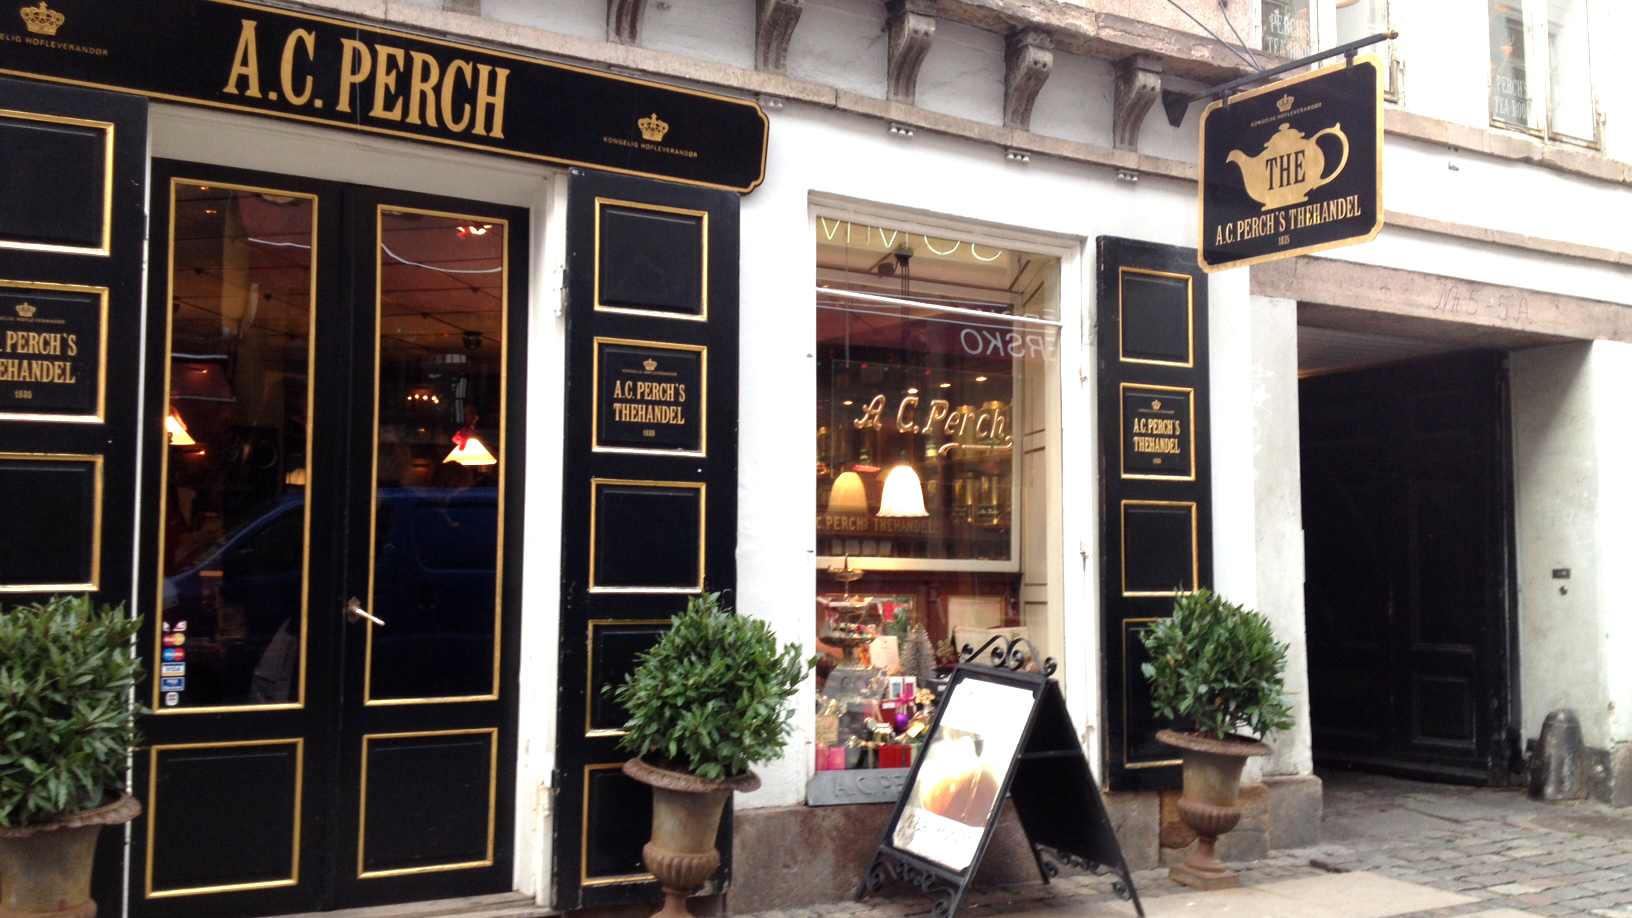 bånd karakter Gå ud A. C. Perch's Tea Merchants | Shopping | VisitCopenhagen